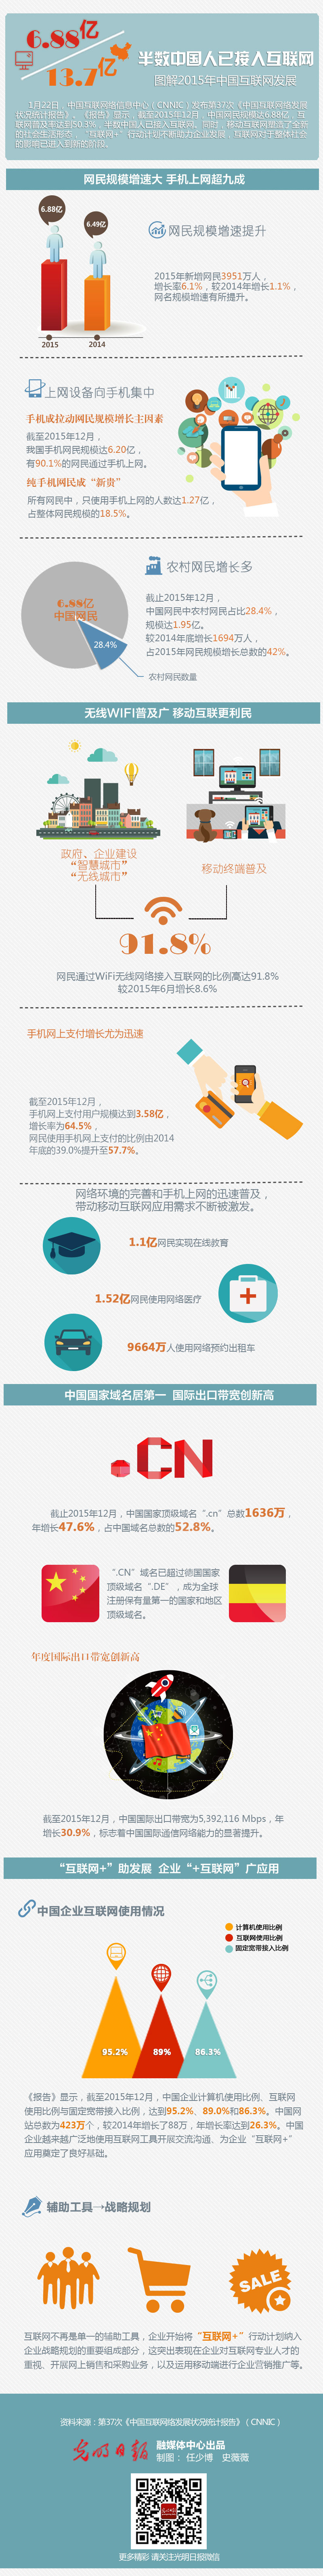 图解2015年中国互联网发展：半数中国人已接入互联网